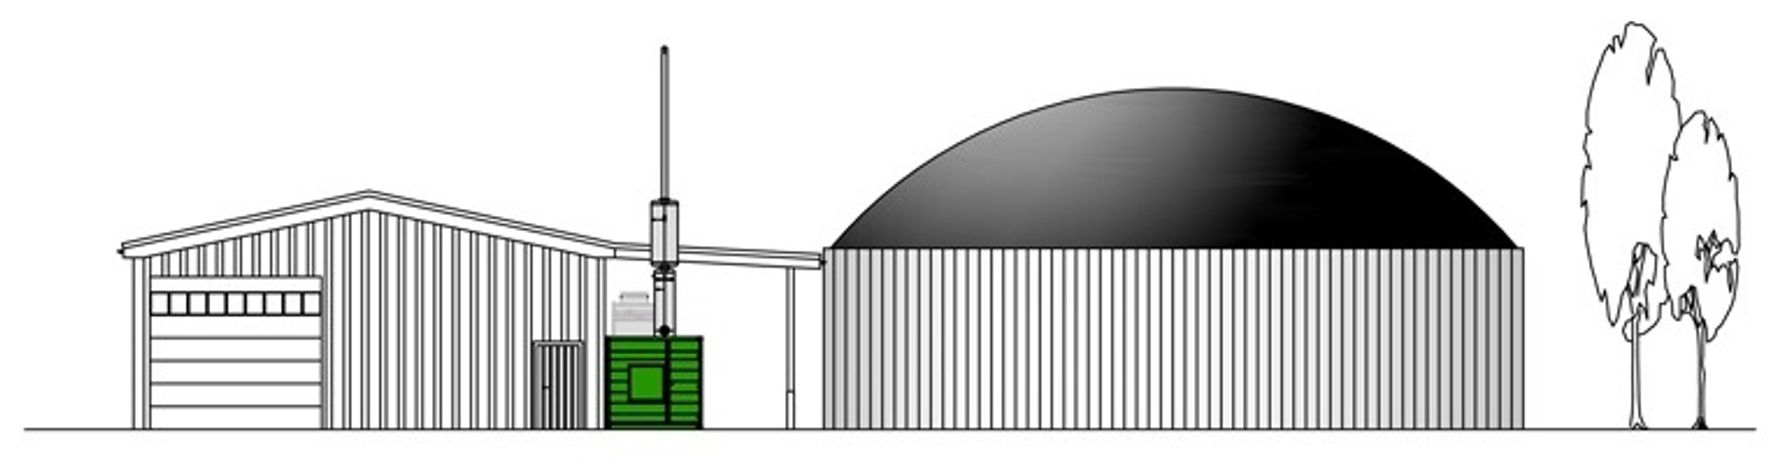 Archea - Cofermentation Biogas Plant